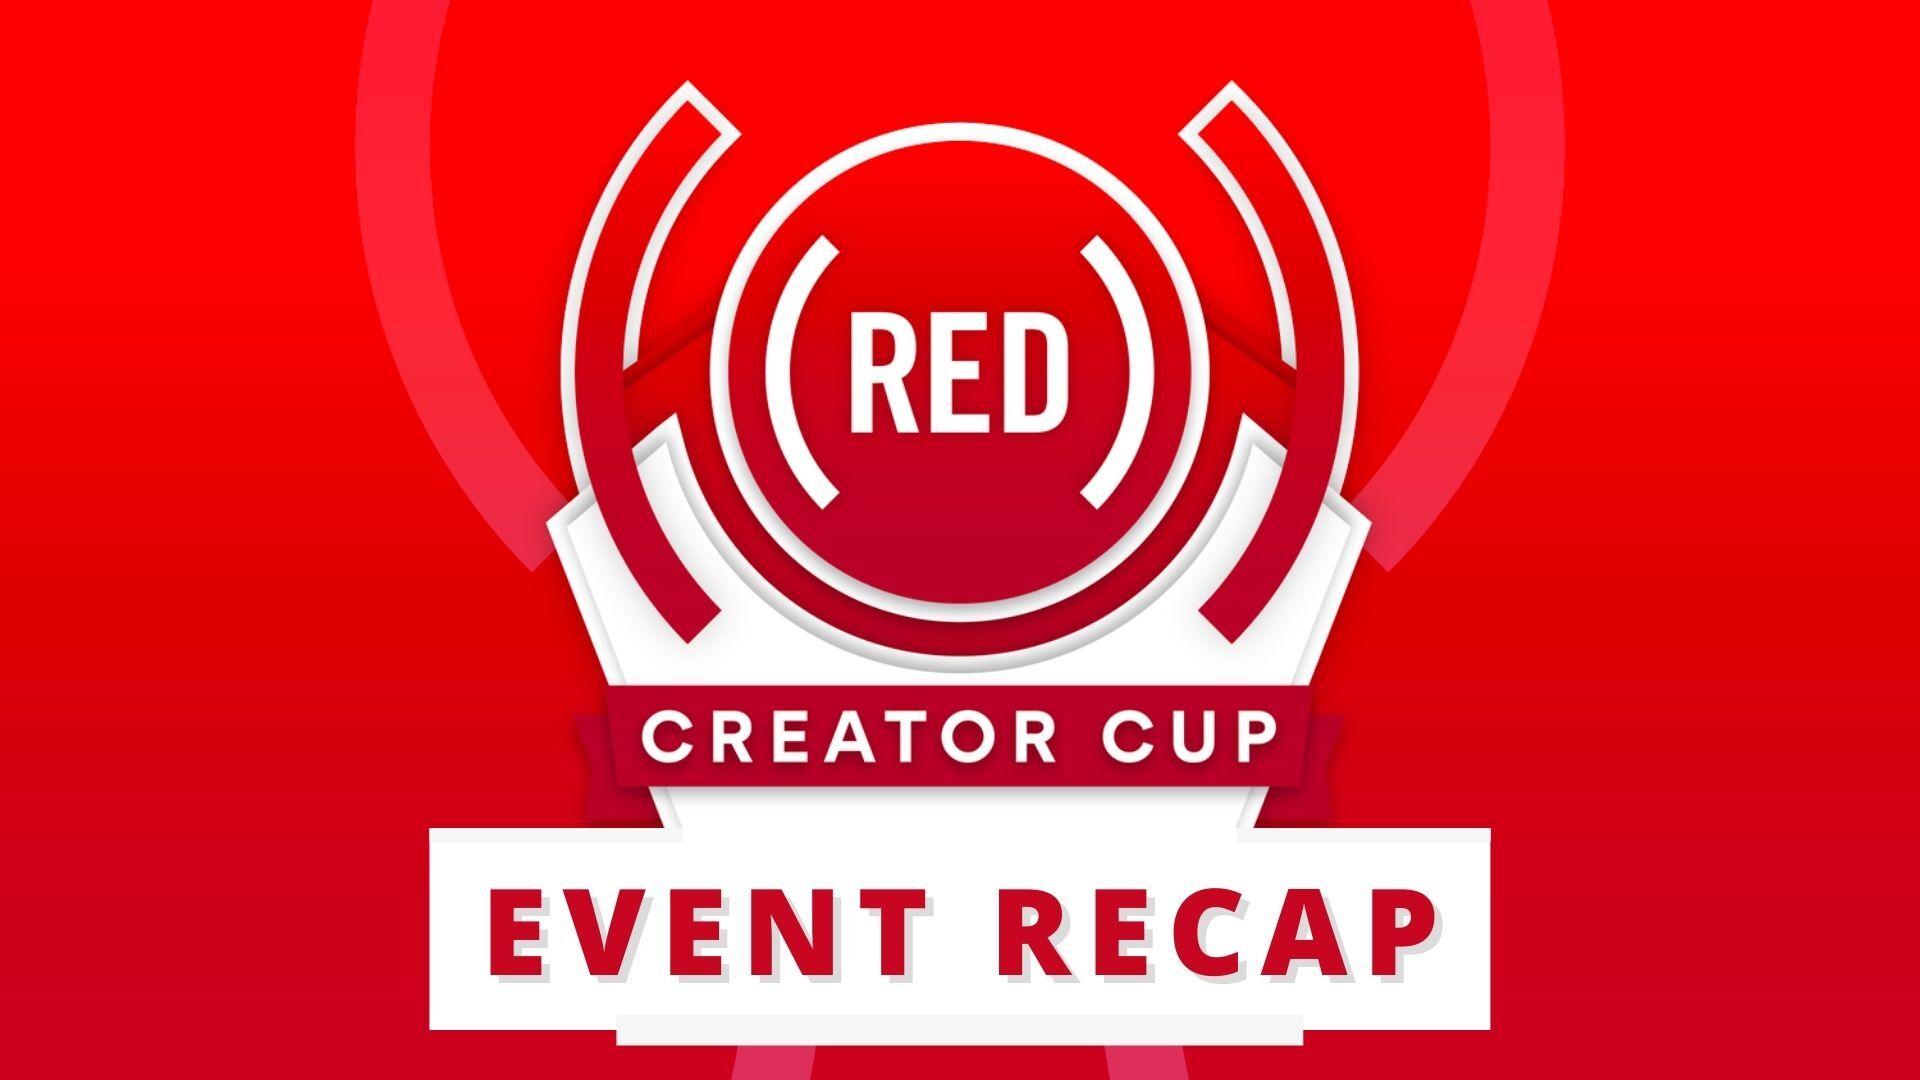 (RED) Creator Cup event recap